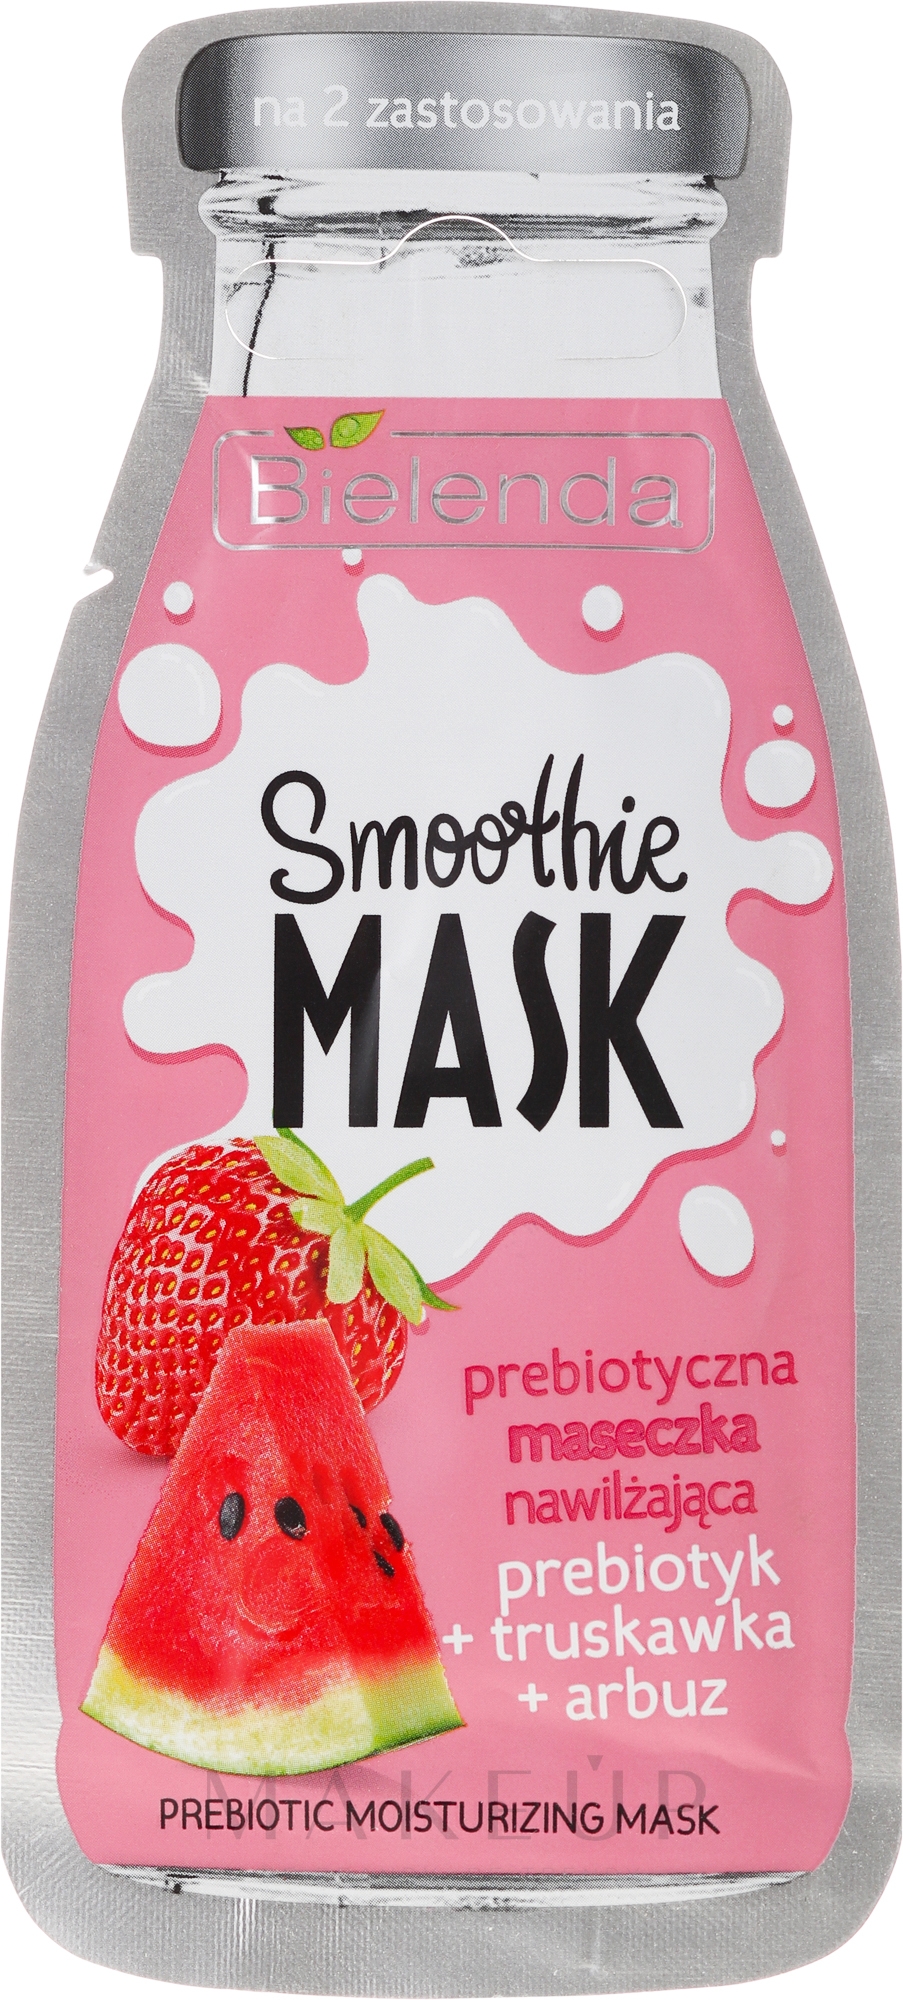 Feuchtigkeitsspendende Gesichtsmaske mit Erdbeere und Wassermelone - Bielenda Smoothie Mask Prebiotic Moisturizing Mask — Foto 10 g